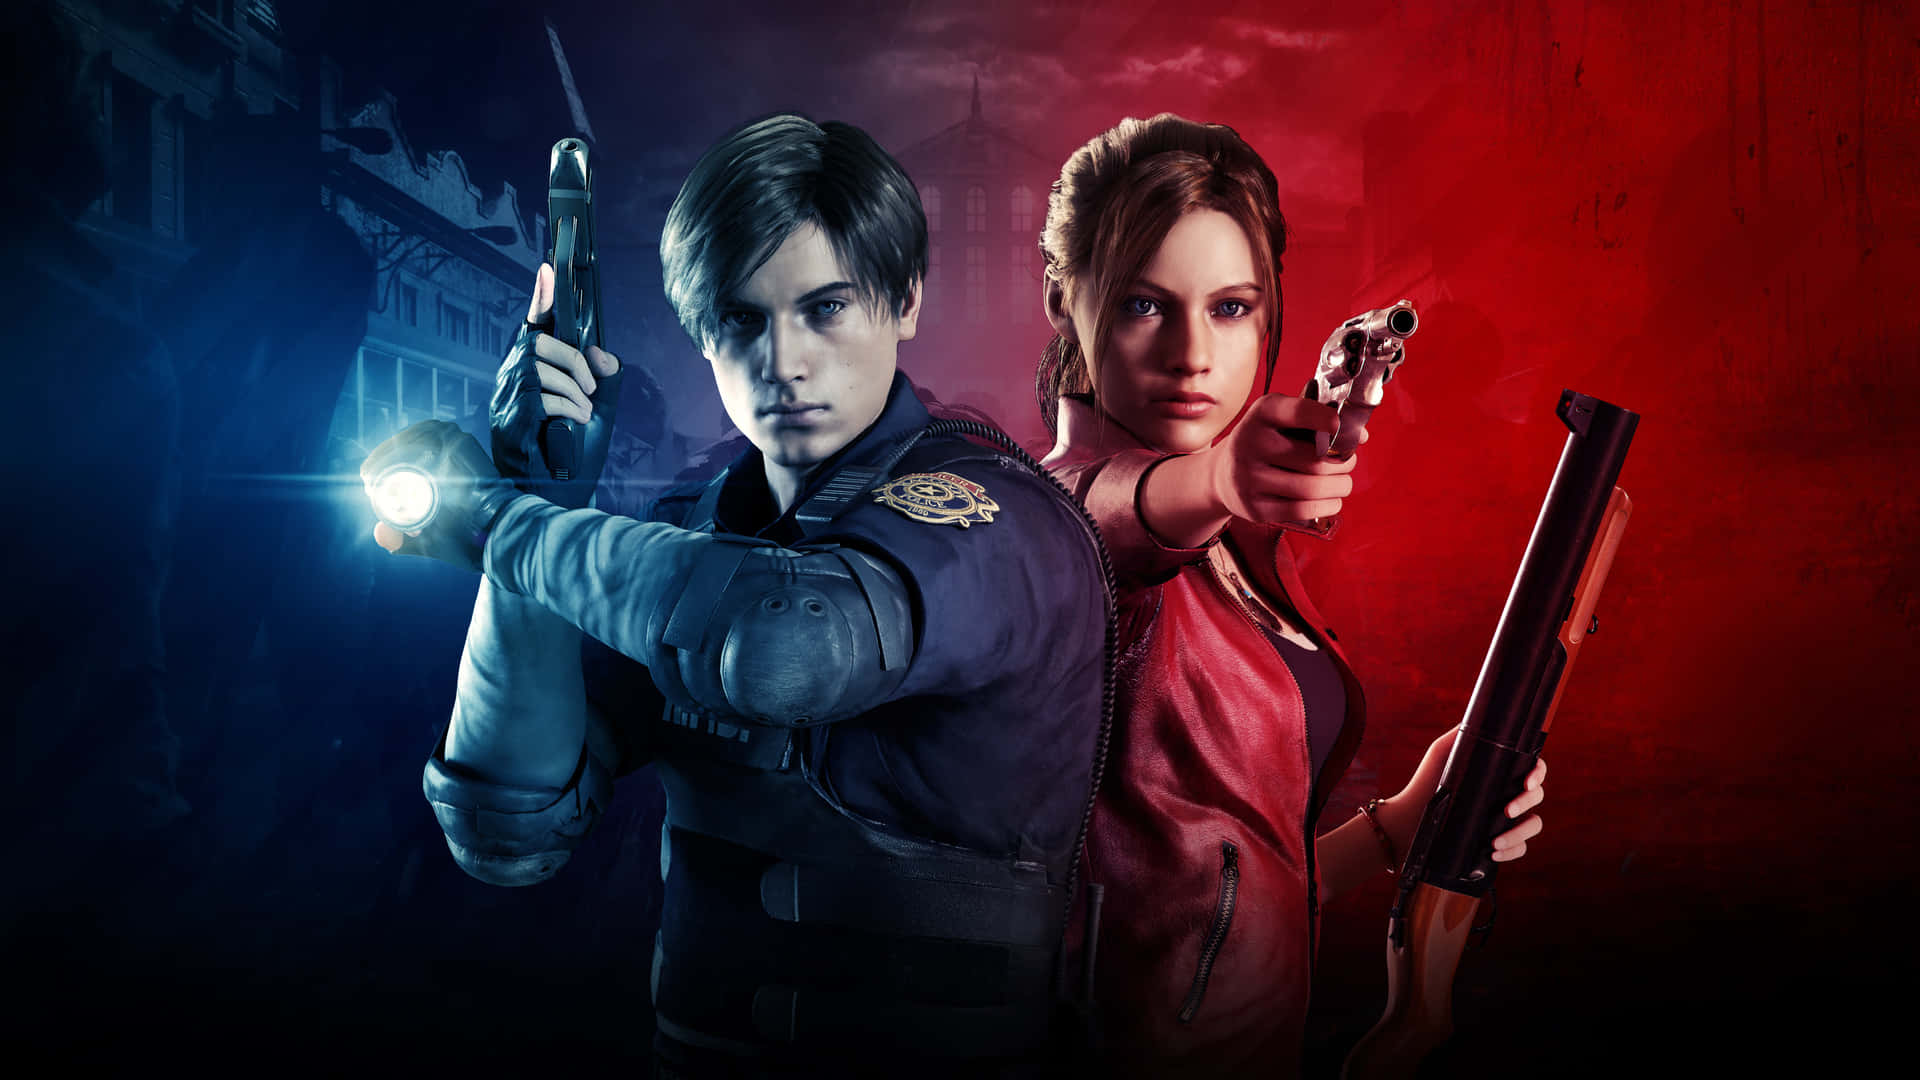 Preparate Para O Inesperado - Claire Redfield De Resident Evil 2. Papel de Parede